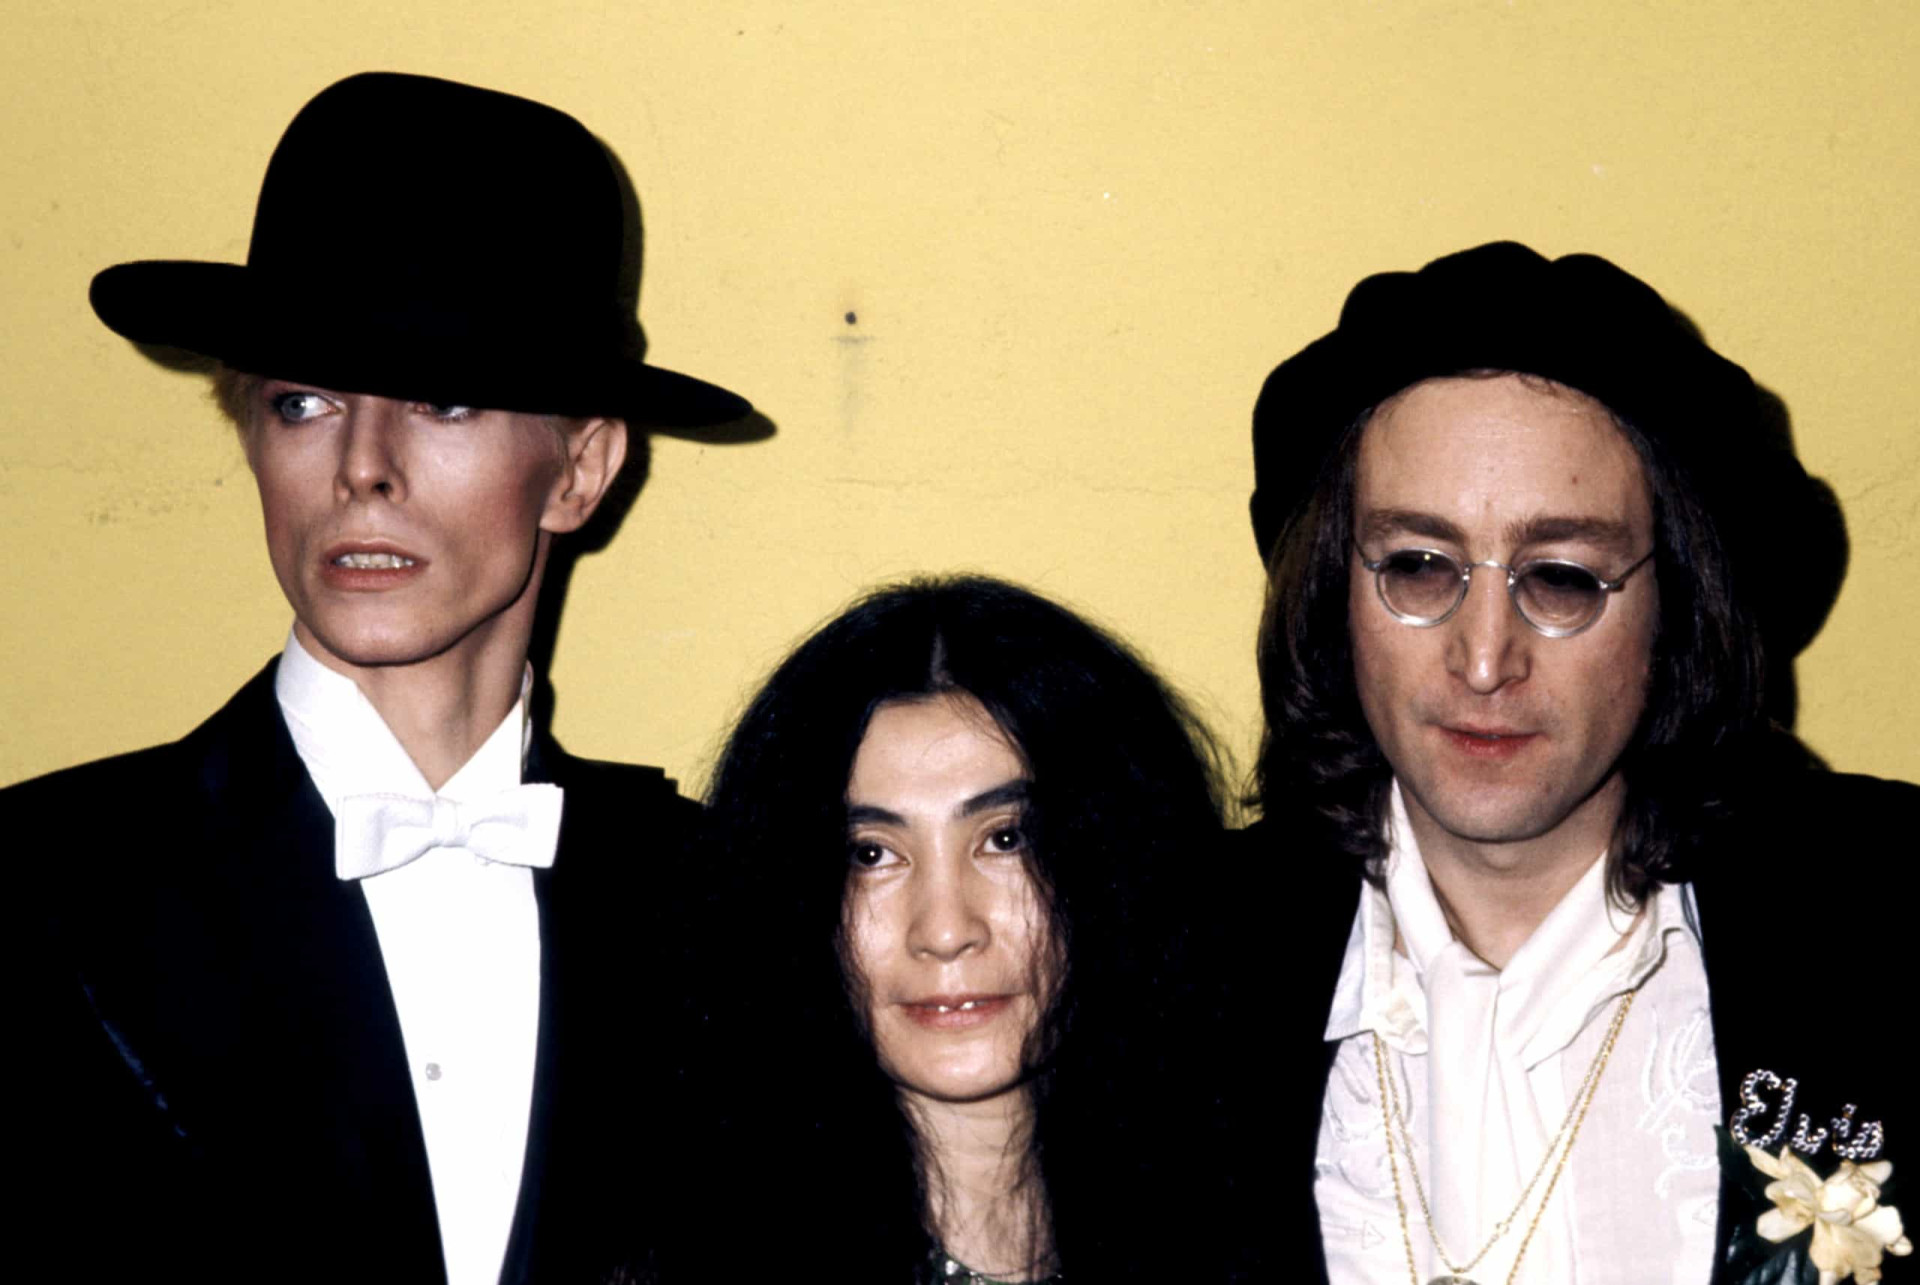 <p>John Lennon et Yoko Ono avaient rencontré David Bowie dans les coulisses du 17ème anniversaire des Grammy Awards, le 1 mars 1975. L'artiste avait collaboré avec David Bowie pour le titre "Fame", qu'il avait co-écrit, ainsi que "Thin White Duke", dans lequel il avait également joué et chanté. C'est d'ailleurs avec ce tube que David Bowie était arrivé numéro 1 aux États-Unis.</p><p><a href="https://www.msn.com/fr-ca/community/channel/vid-7xx8mnucu55yw63we9va2gwr7uihbxwc68fxqp25x6tg4ftibpra?cvid=94631541bc0f4f89bfd59158d696ad7e">Suivez-nous et accédez tous les jours à du contenu exclusif</a></p>